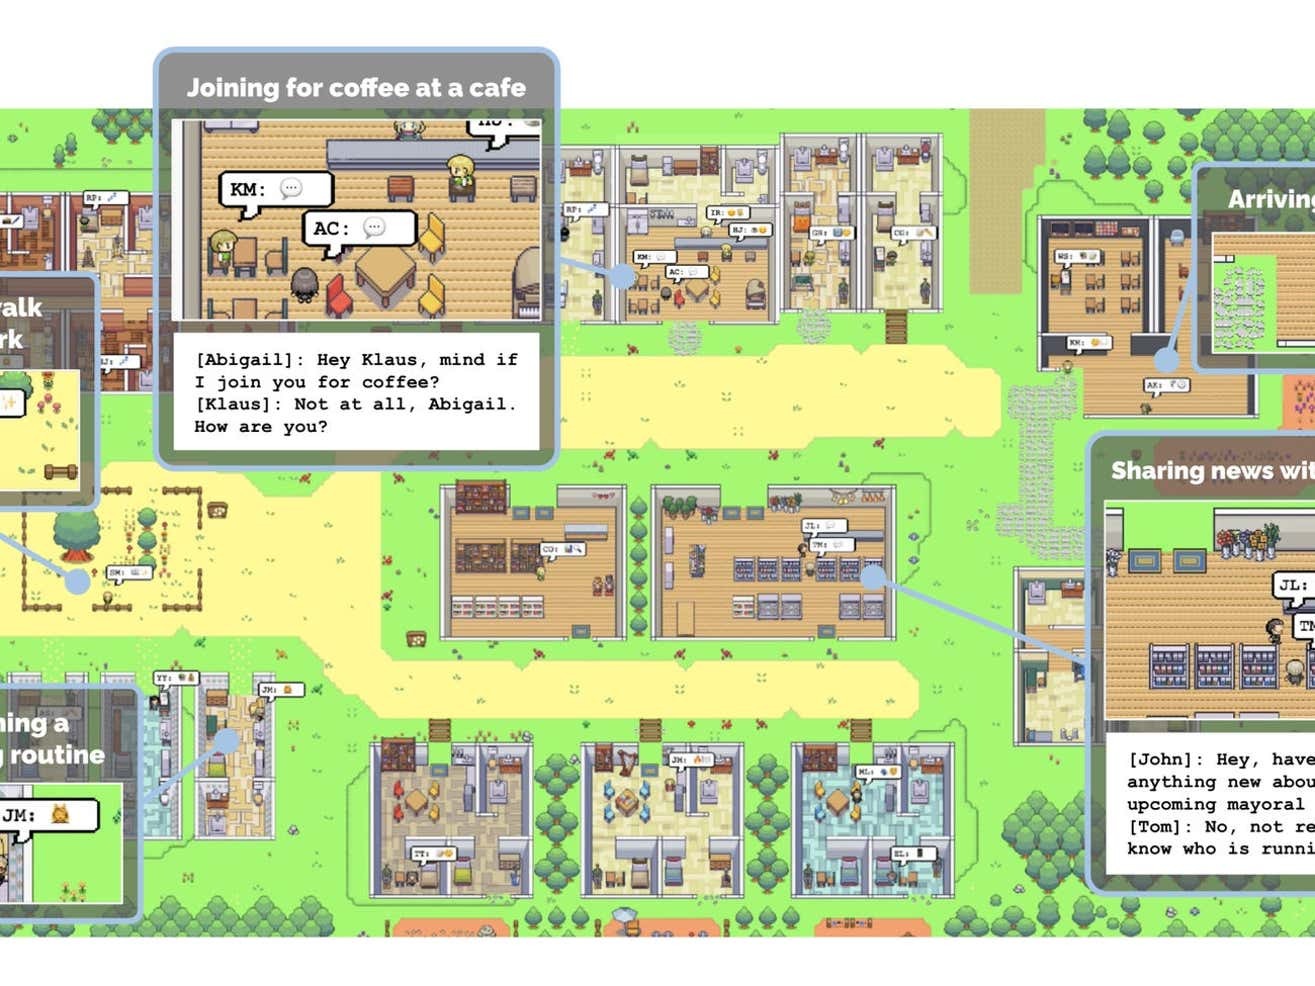 Investigadores de Google y Stanford crean una aldea virtual donde “viven” 25 bots: así consiste el experimento